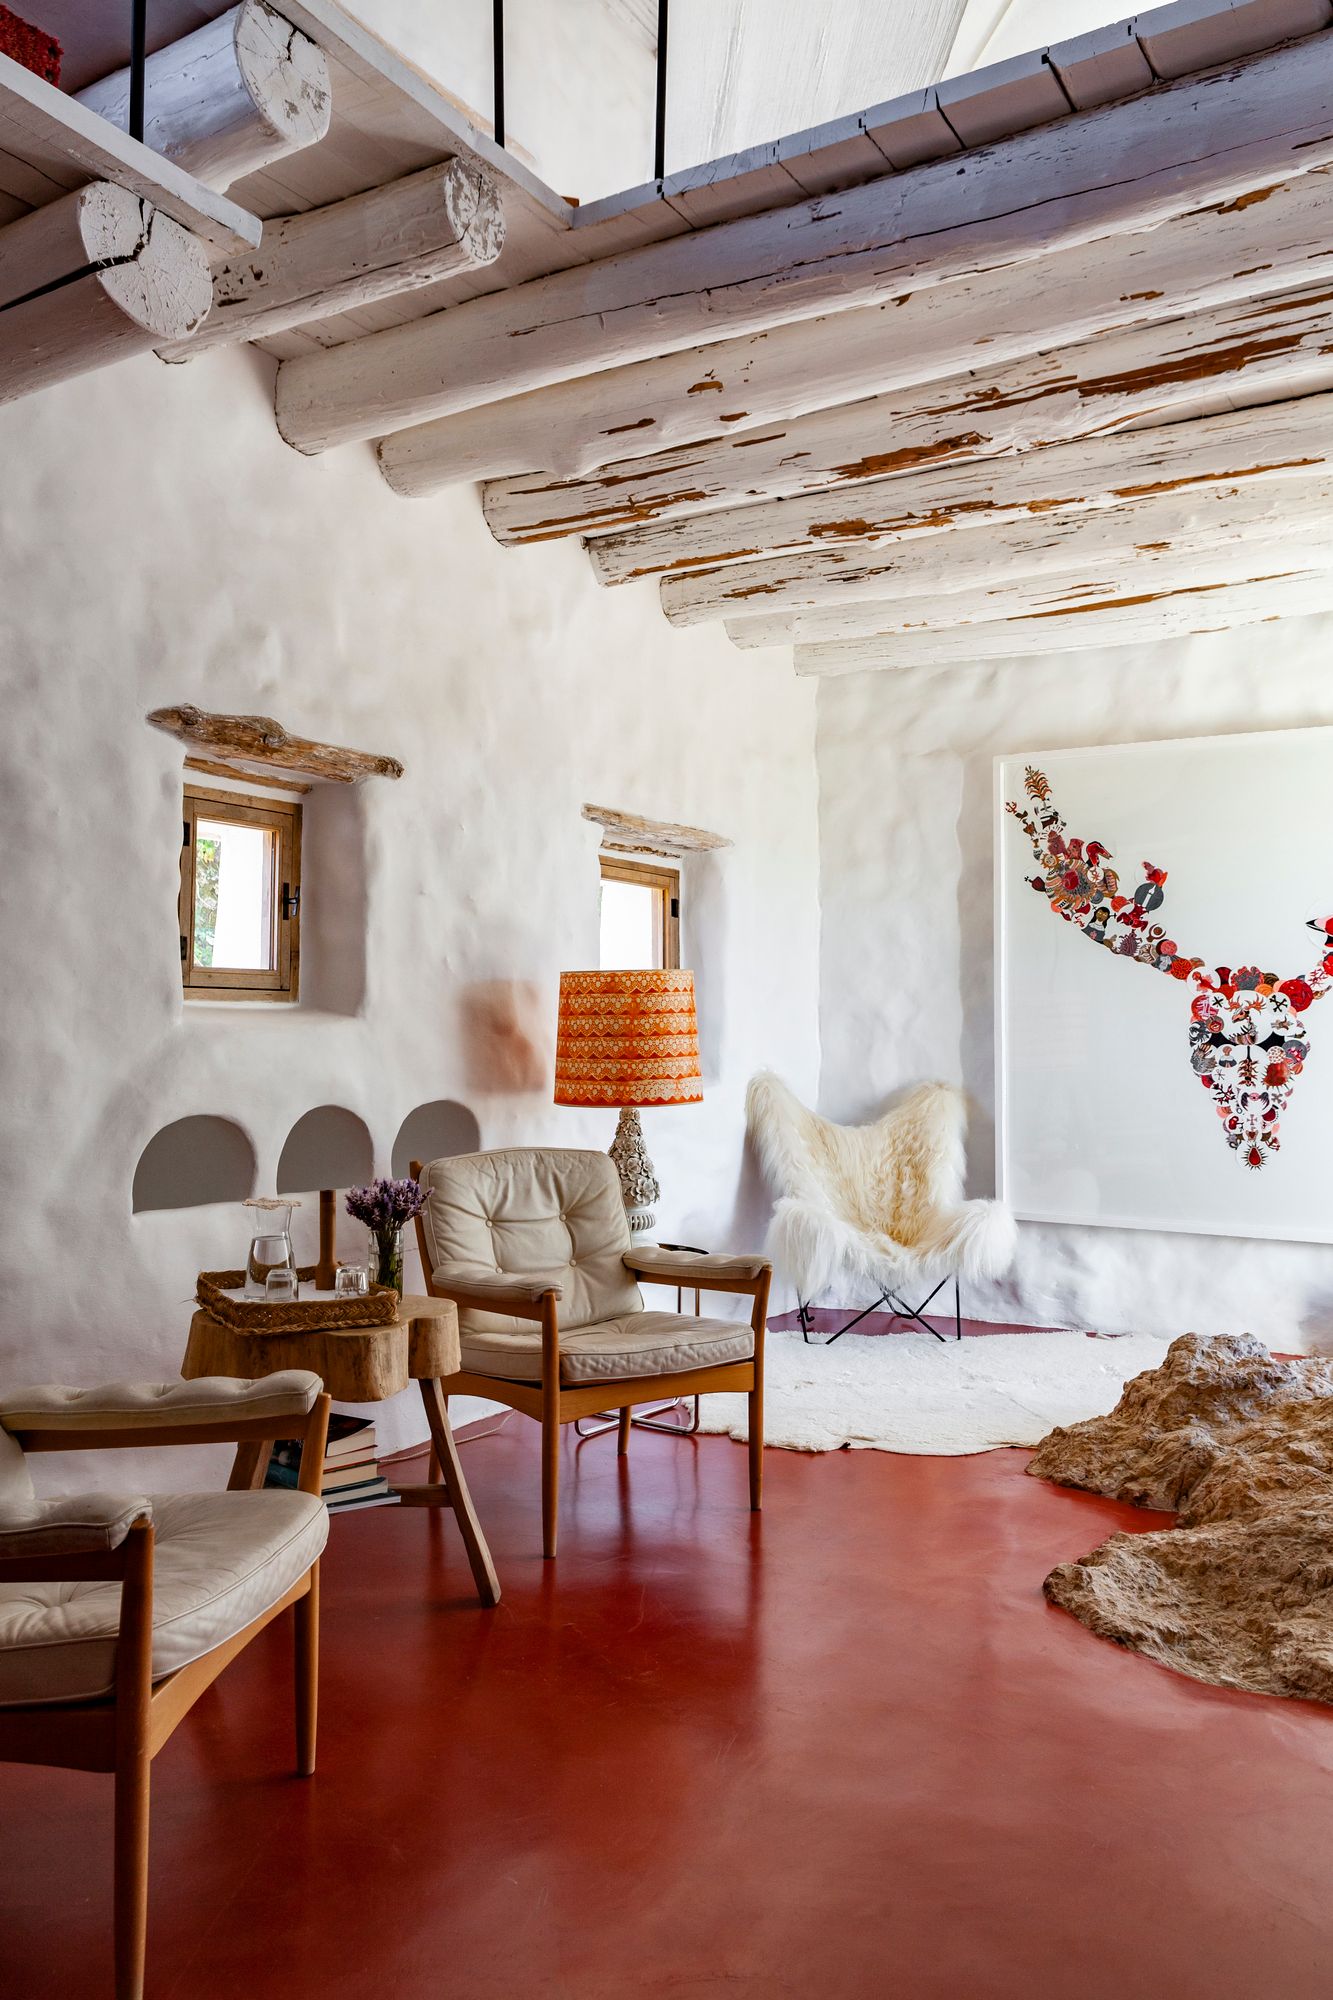 Vierashuoneessa on punainen mikrosementtilattia. Huone on ollut aikoinaan varasto ja kanala. Vintagenojatuolit on valmistanut tanskalainen Göte Möbler. Taideteos on espanjalaisen Marina Vargasin. 